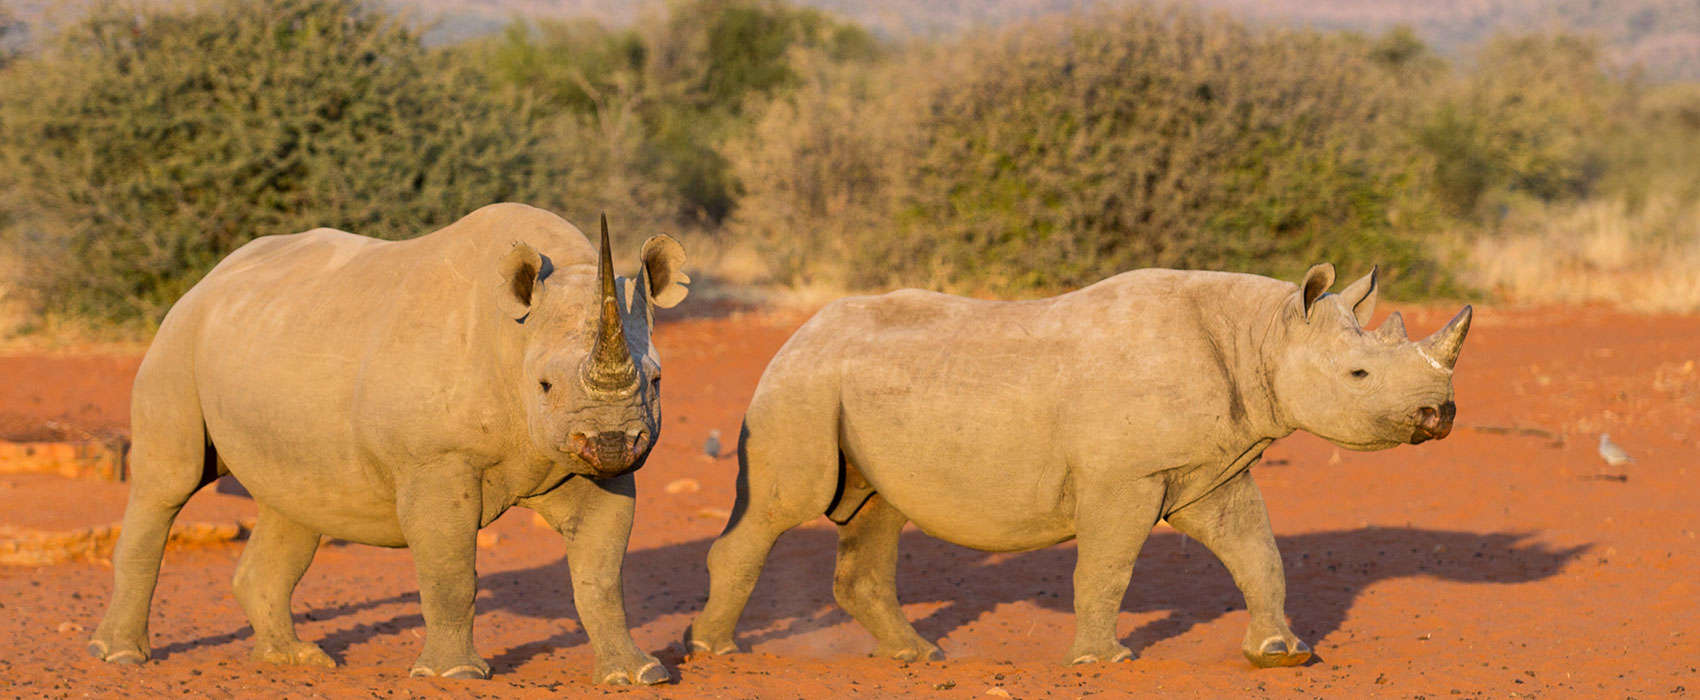 rhino tracking safari